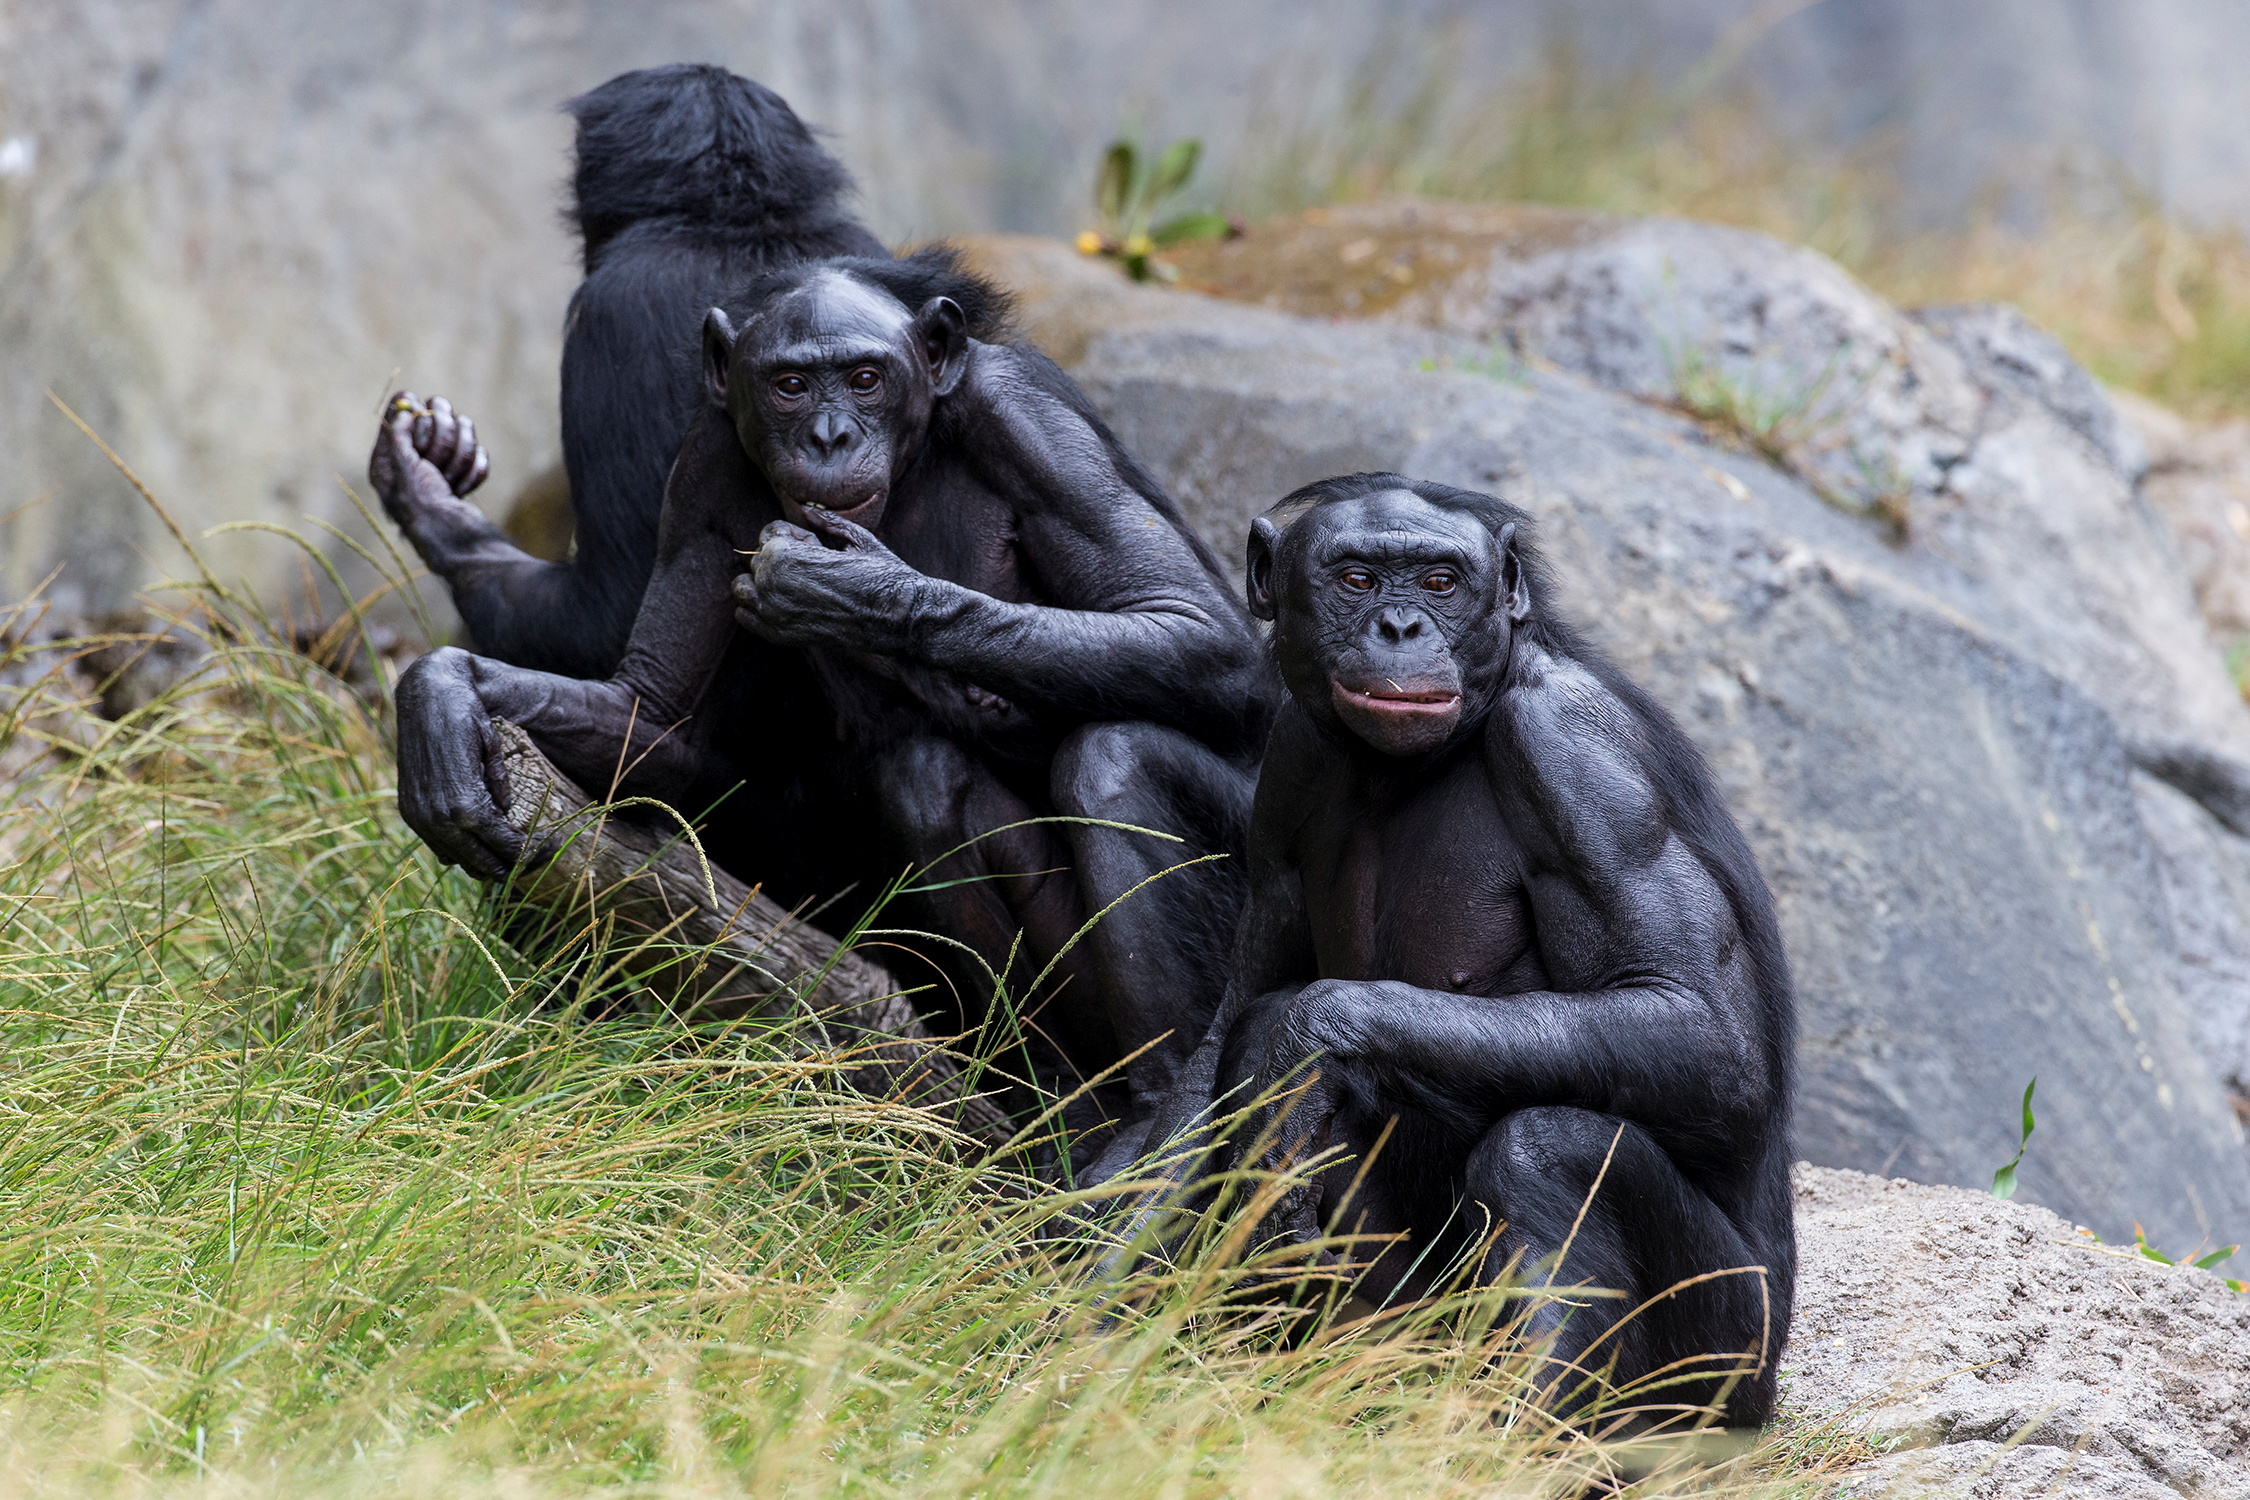 MBOU-MON-TOUR ha desarrollado un sistema de conservación del ecosistema dirigido por los indígenas en la RDC que promueve la coexistencia de los pueblos indígenas y las comunidades locales con las poblaciones locales de bonobos (REUTERS)